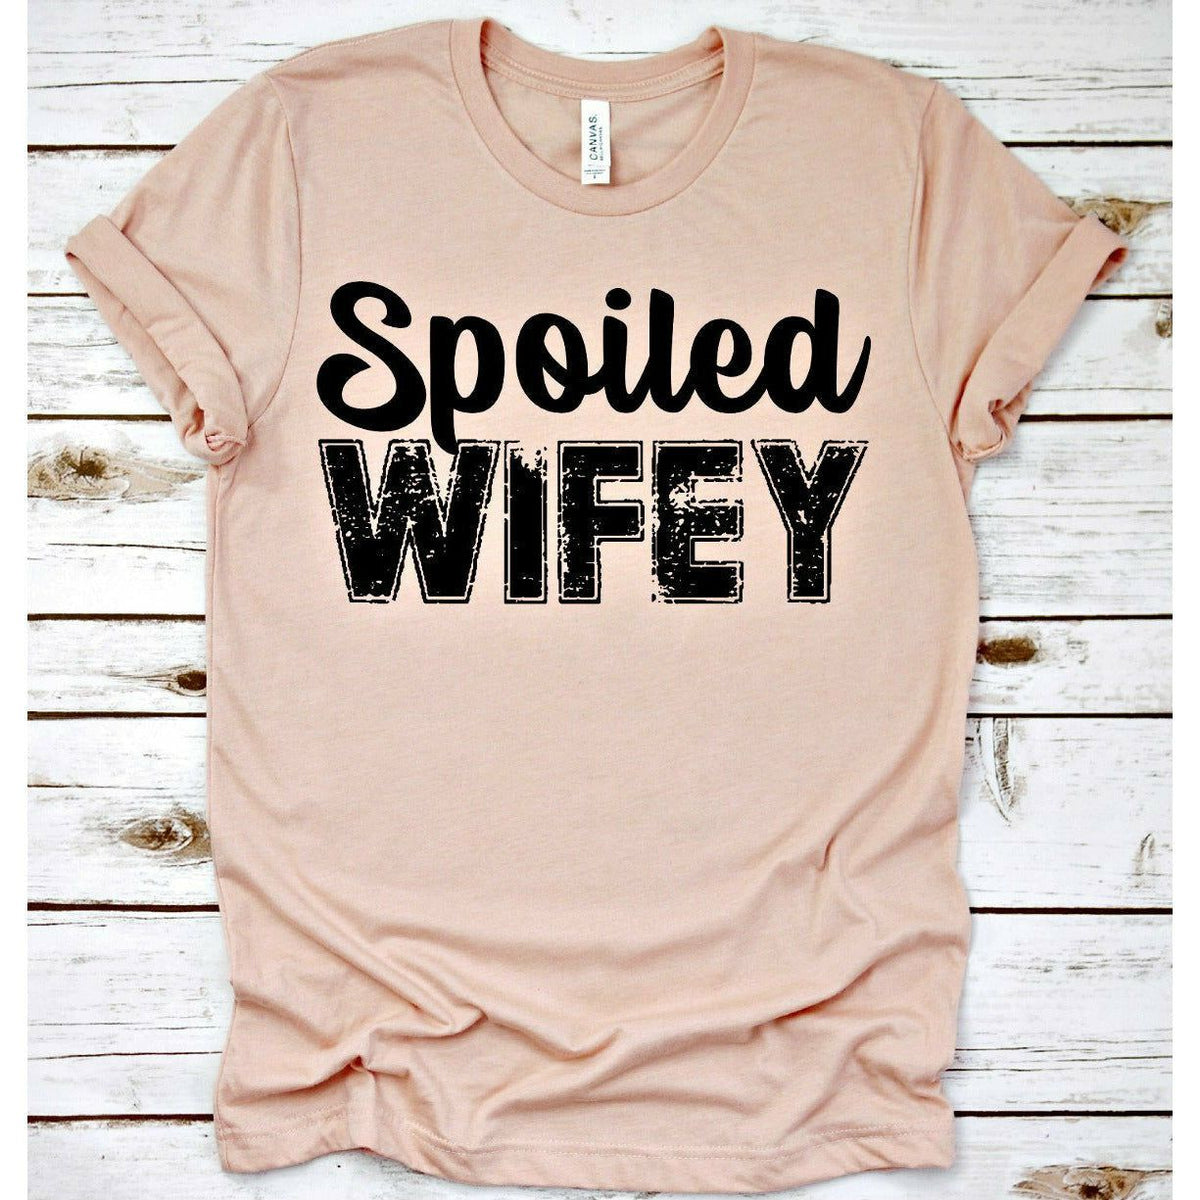 Spoiled Wifey tee or sweatshirt